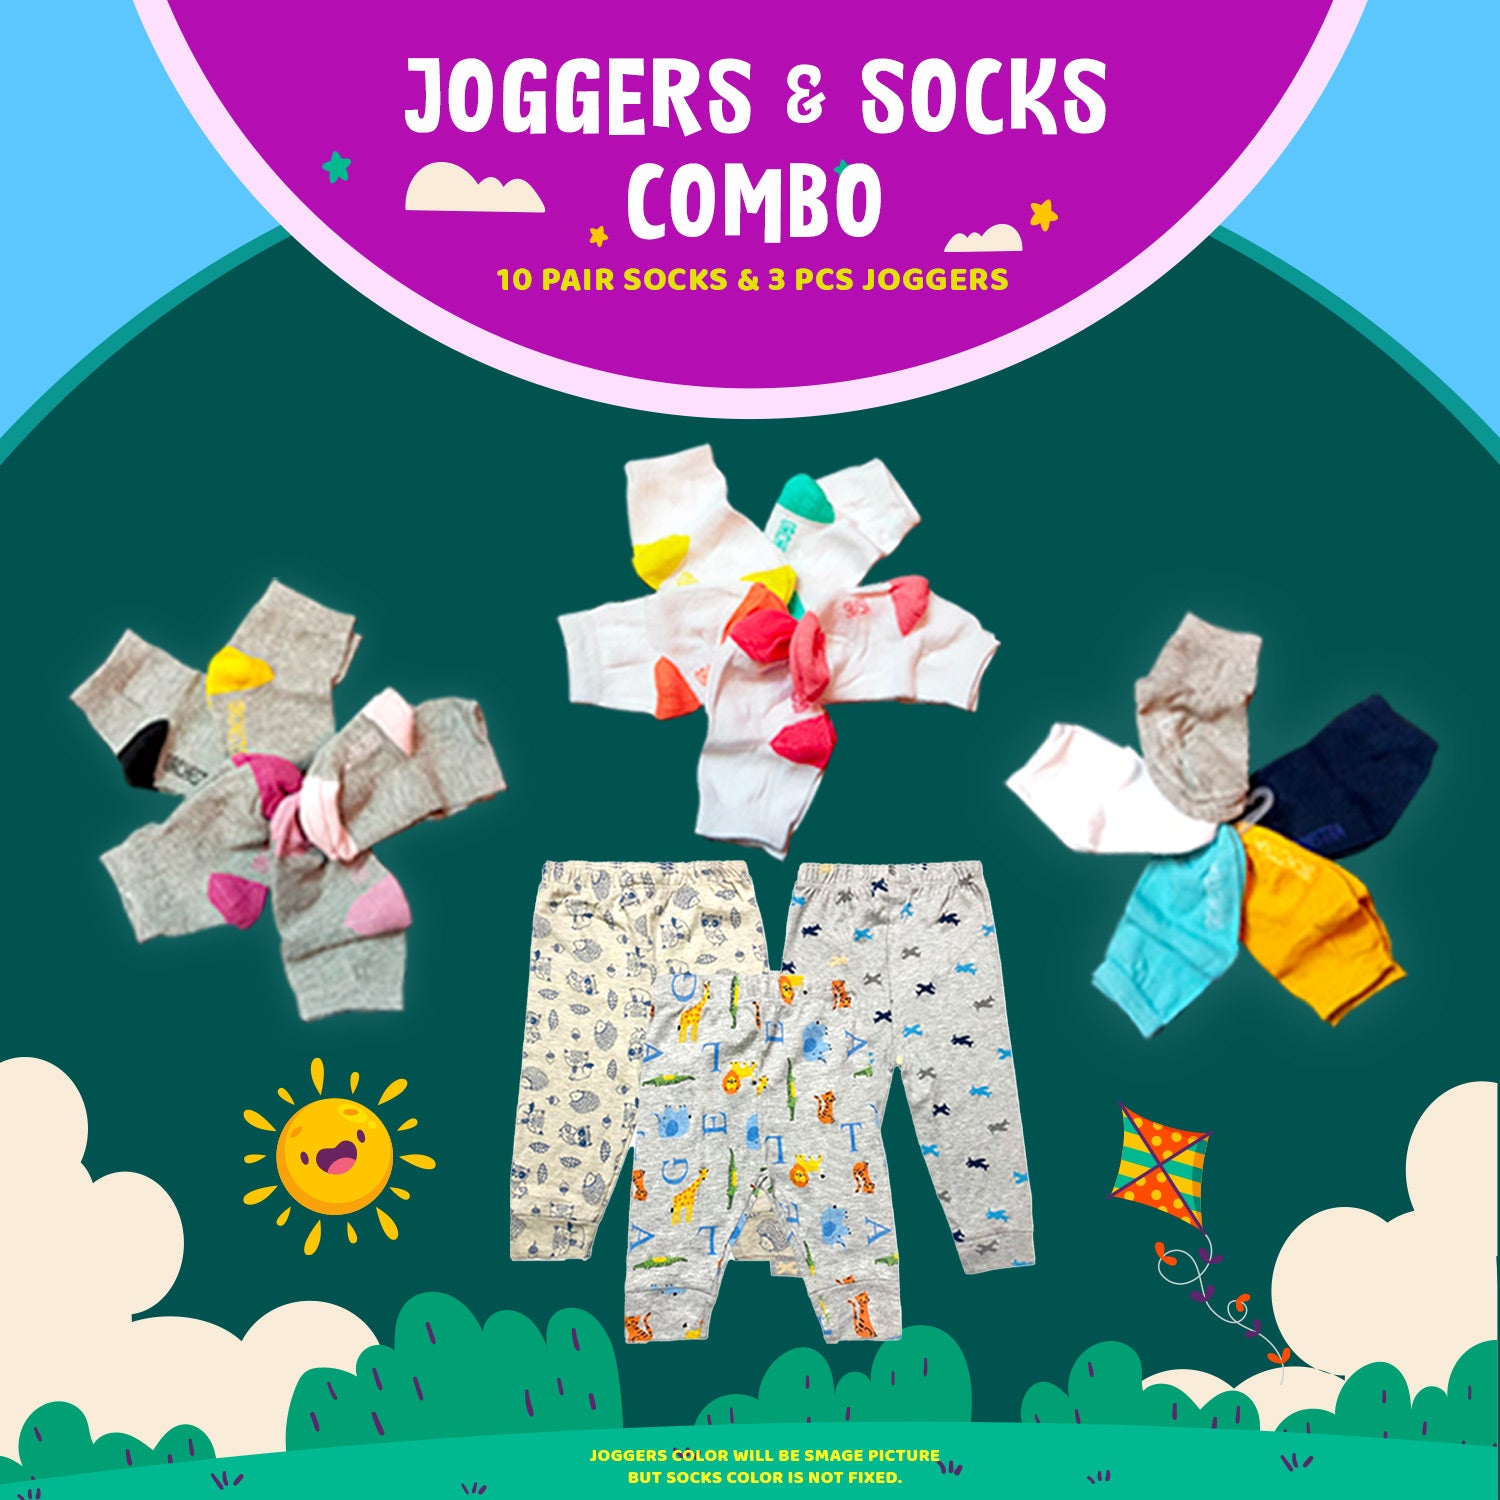 10 Pcs Socks & 3 Pcs Joggers Combo